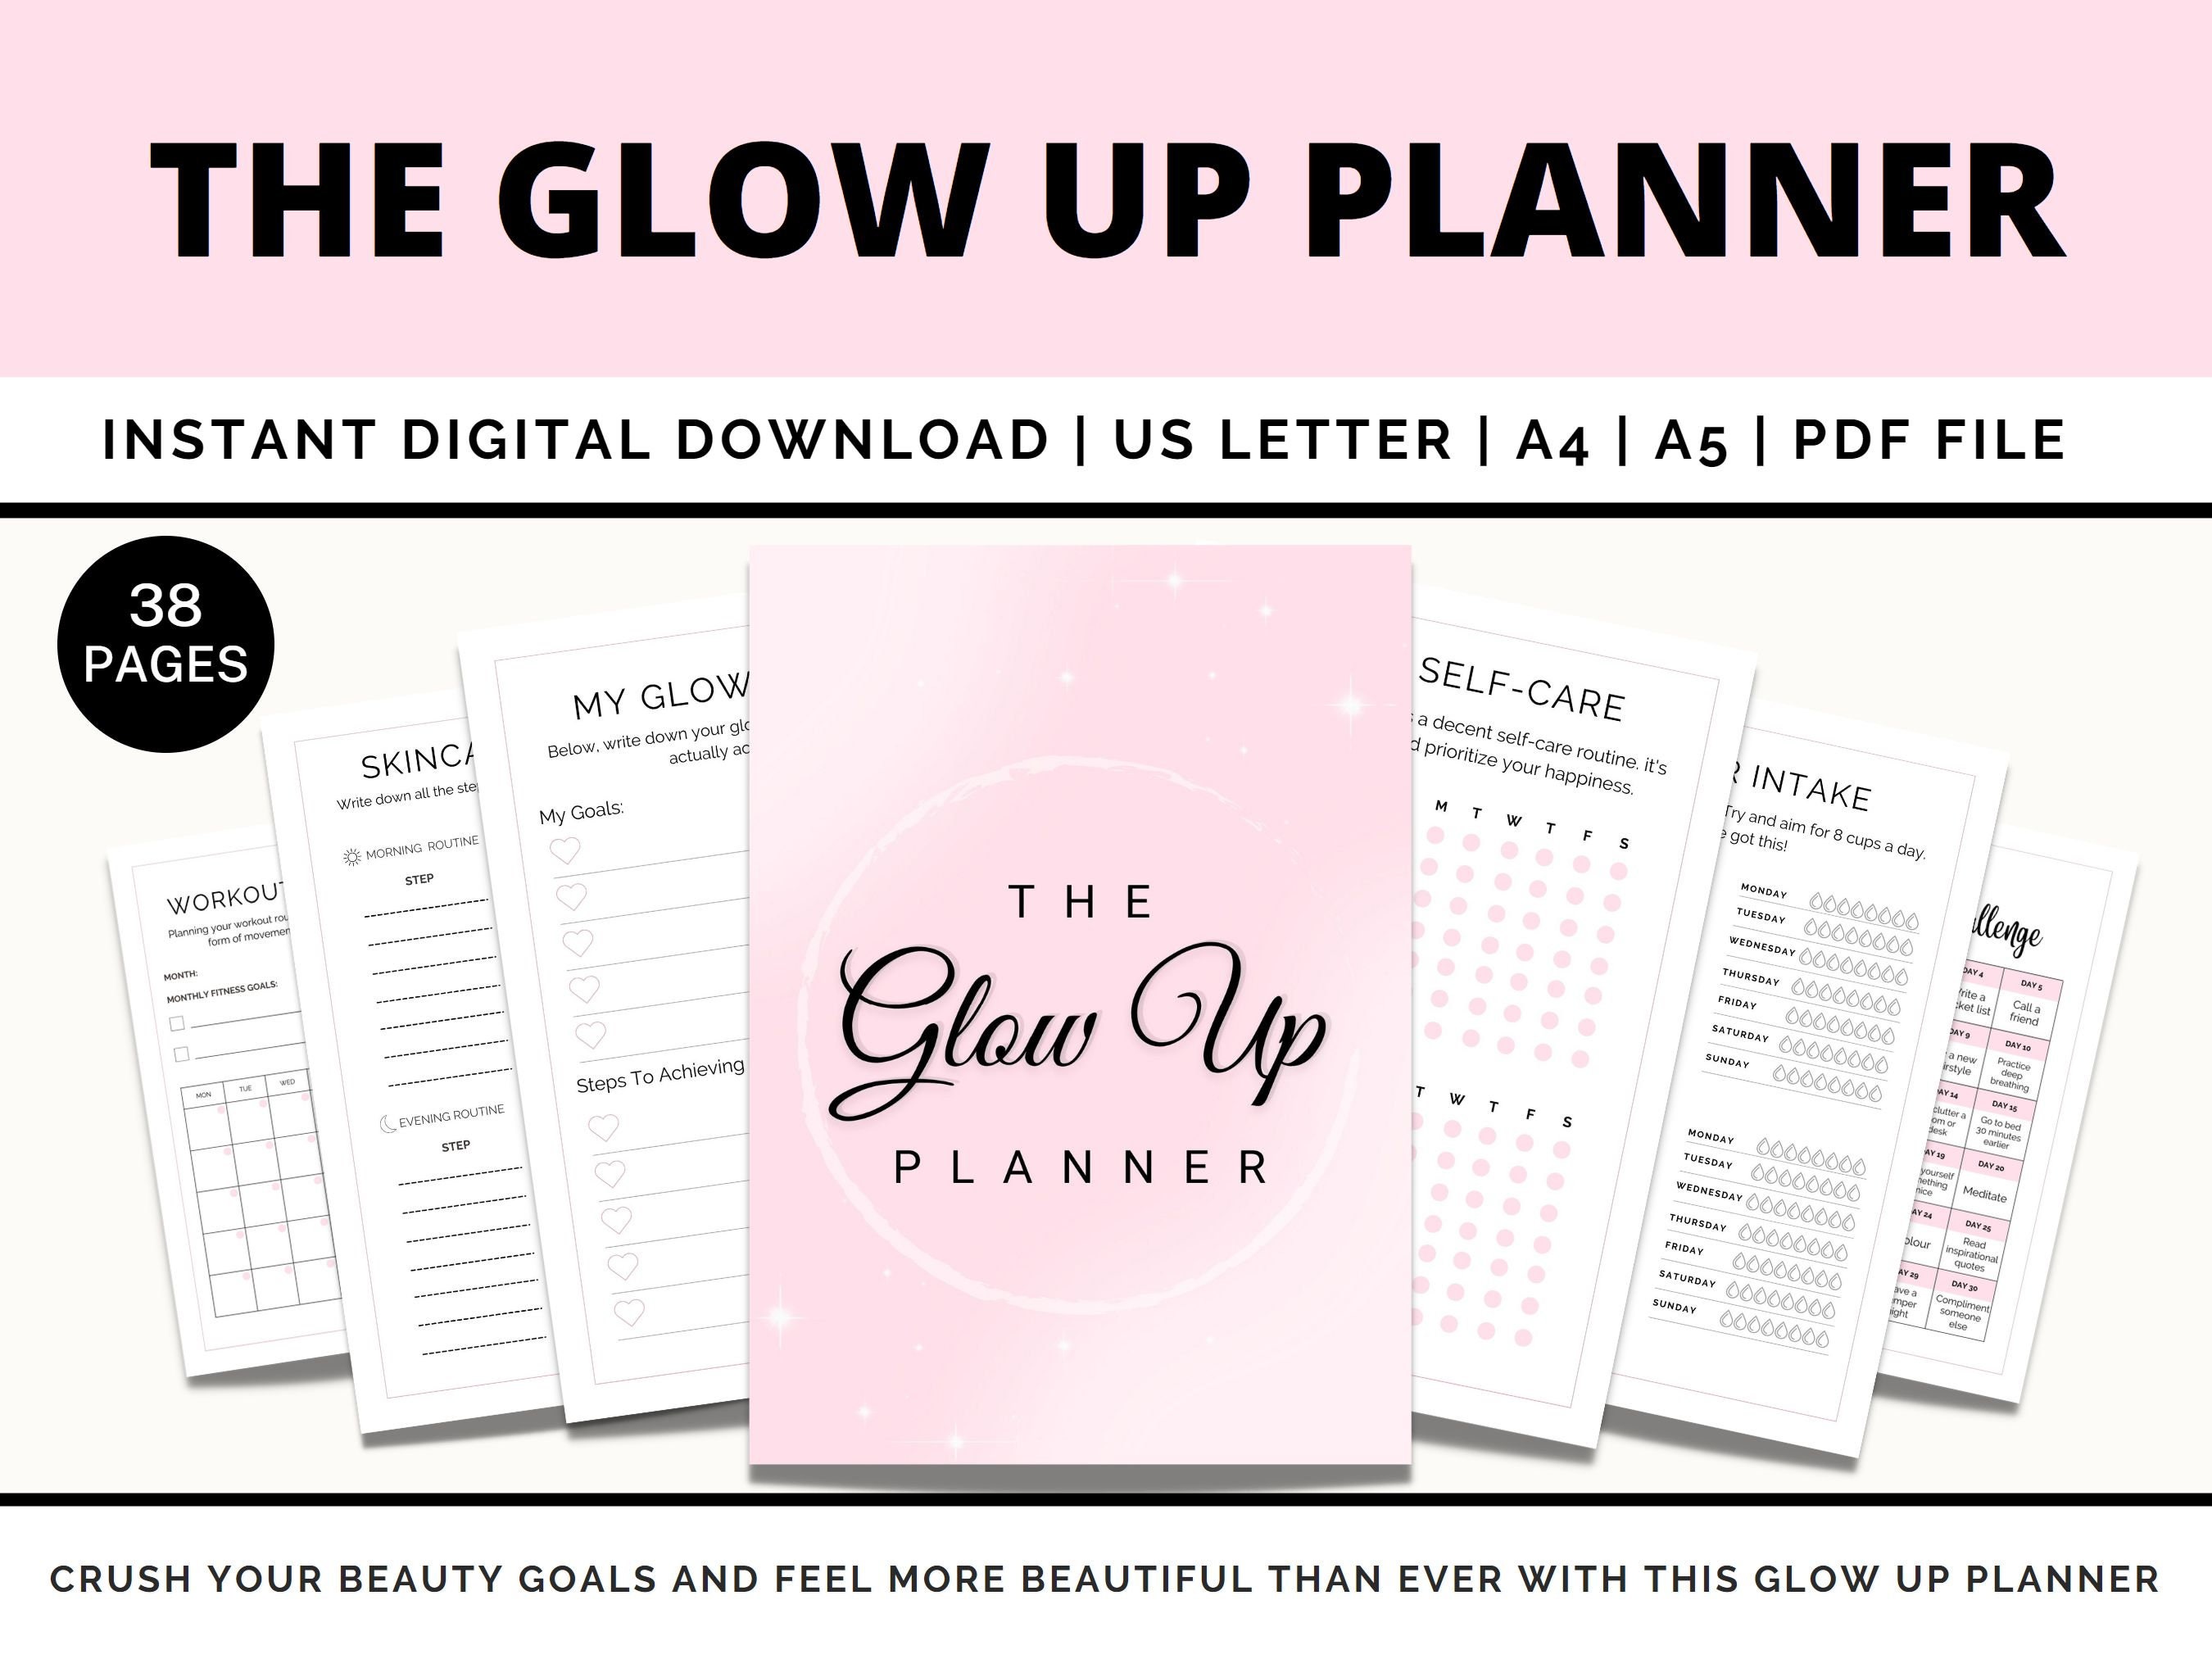 Le planificateur ultime Glow Up, le cahier d'exercices et le guide